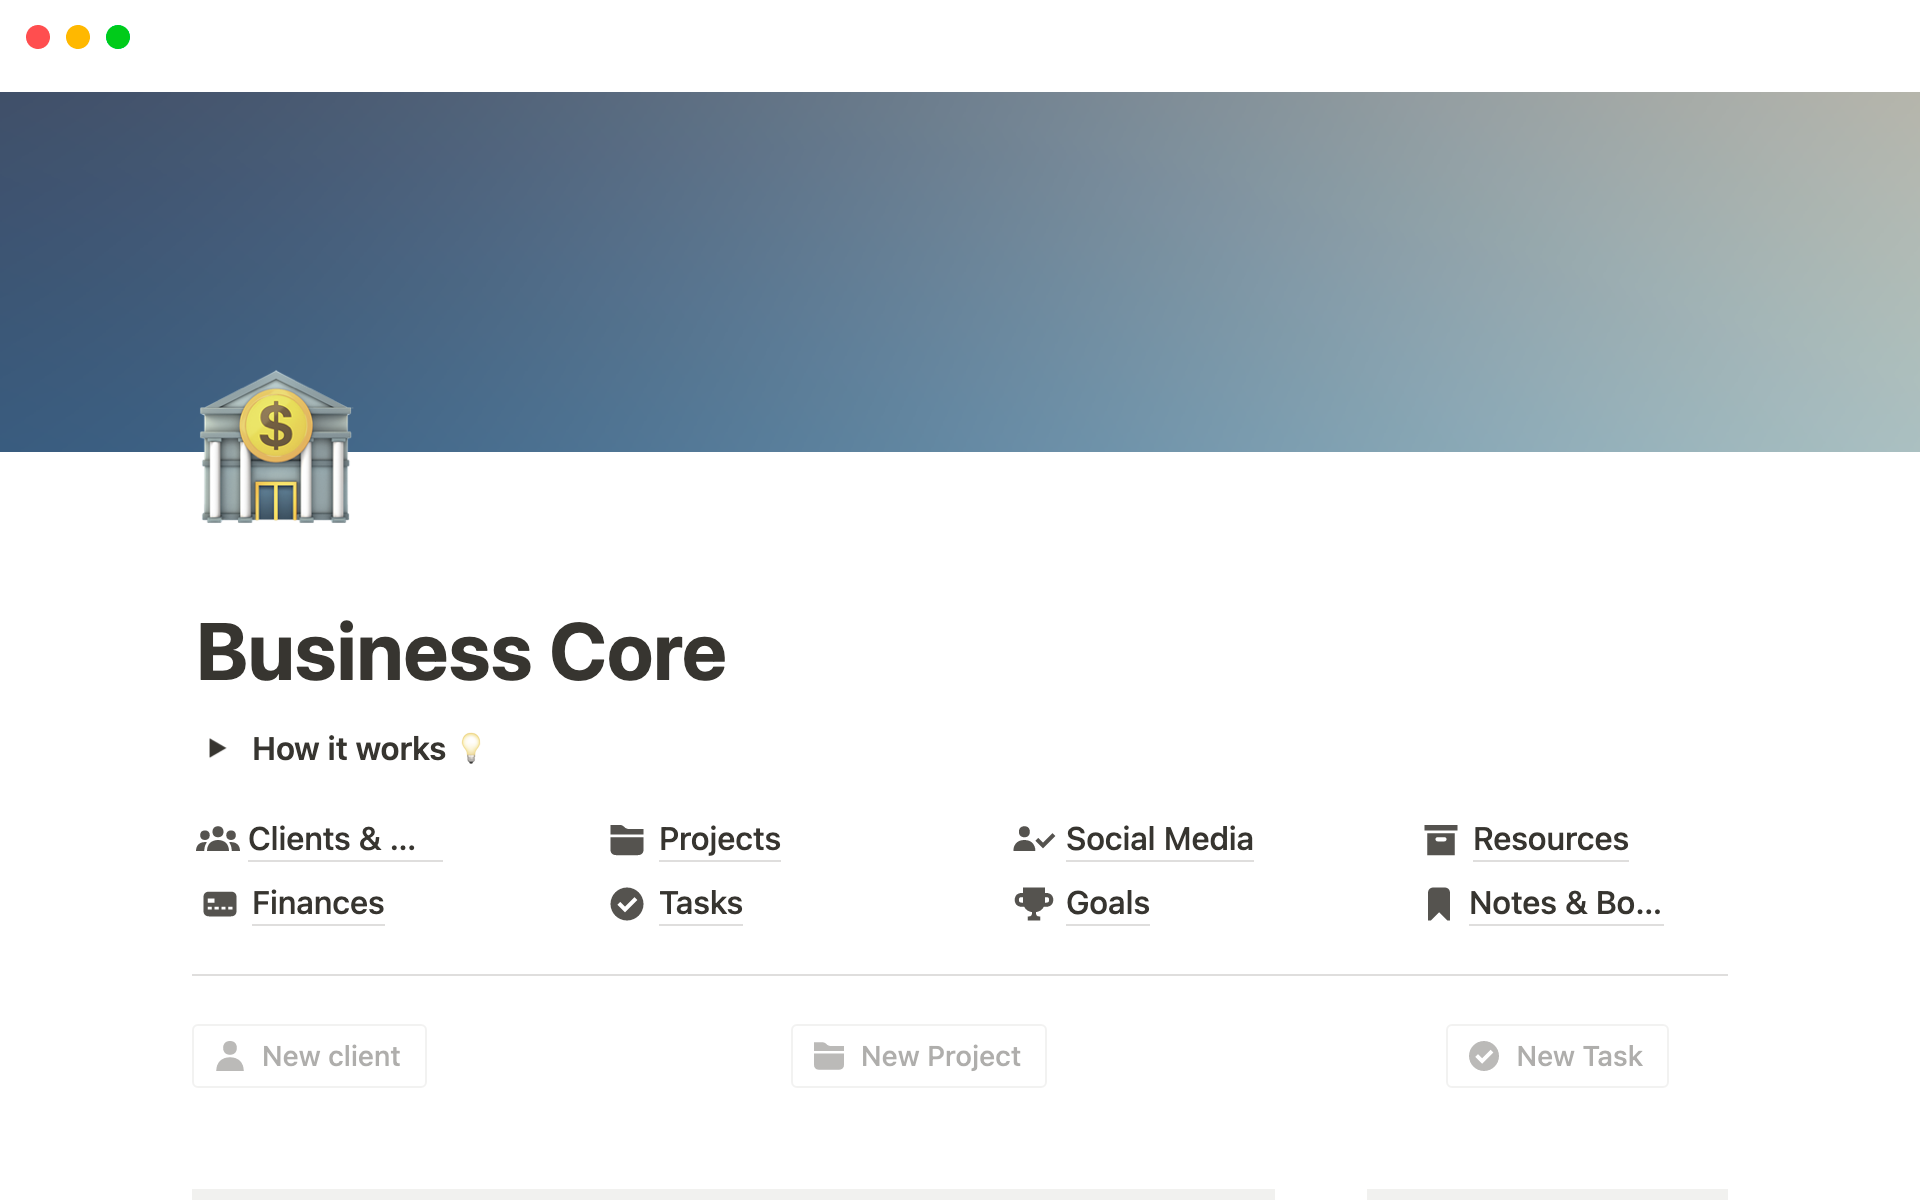 Business Coreのテンプレートのプレビュー